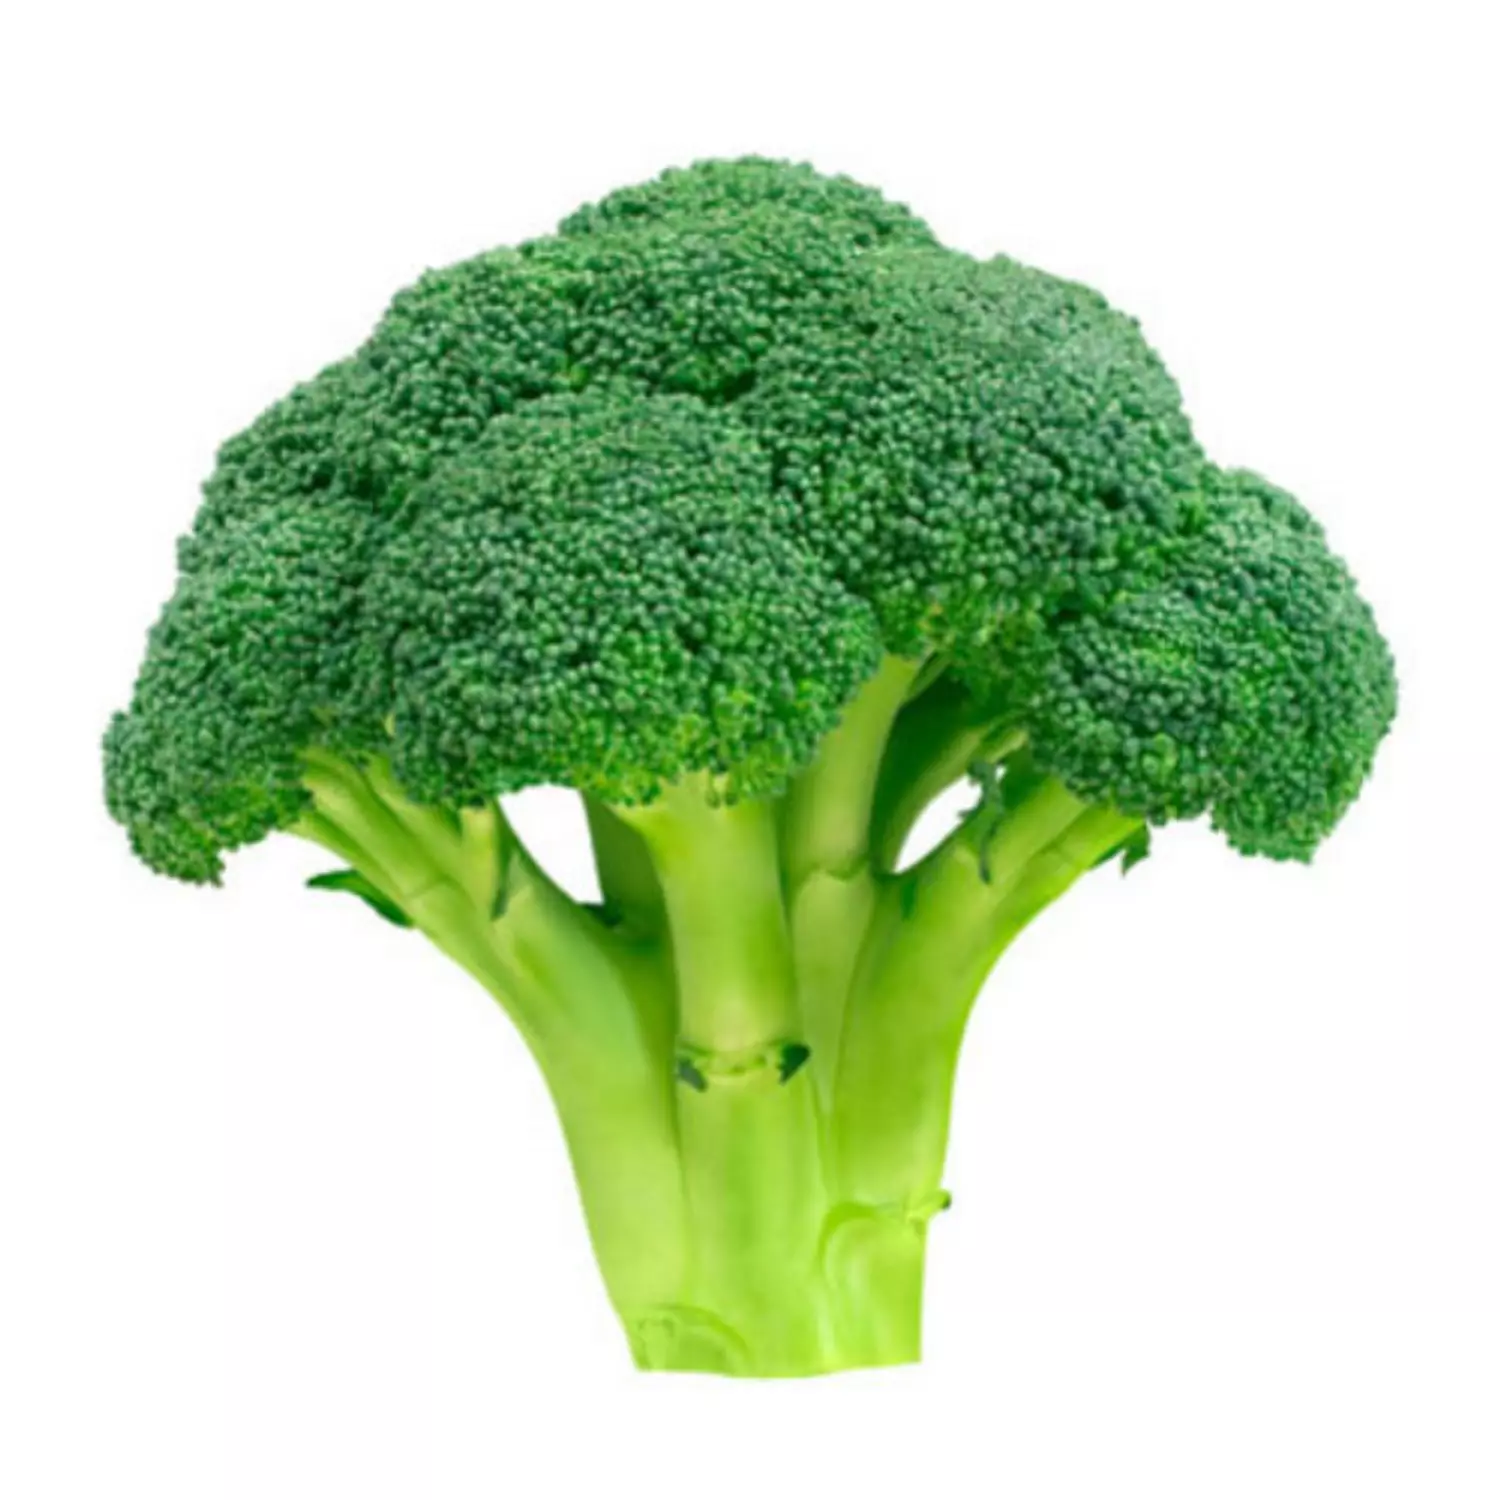 Broccoli hover image